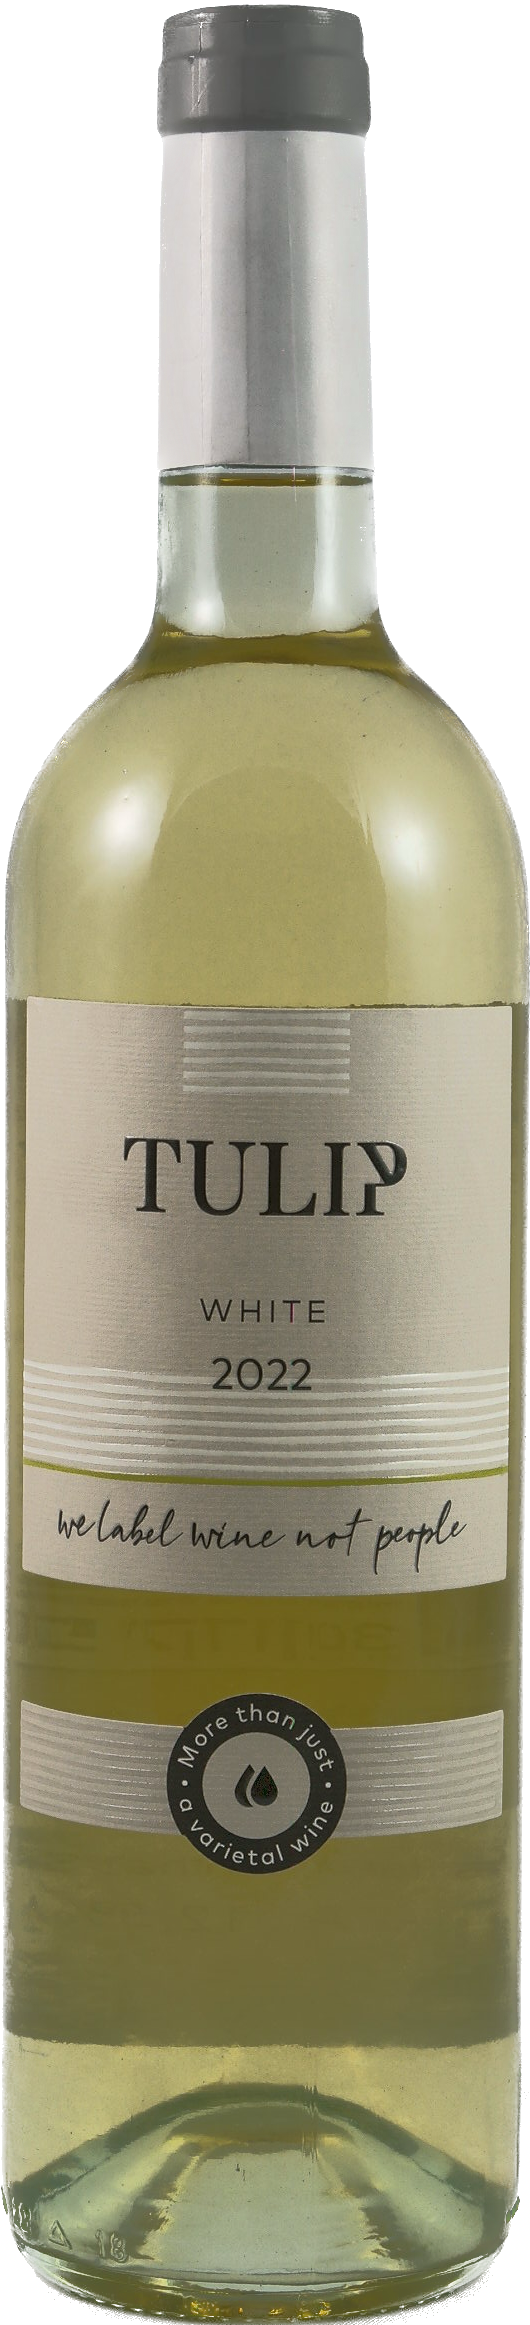 Tulip White 2022